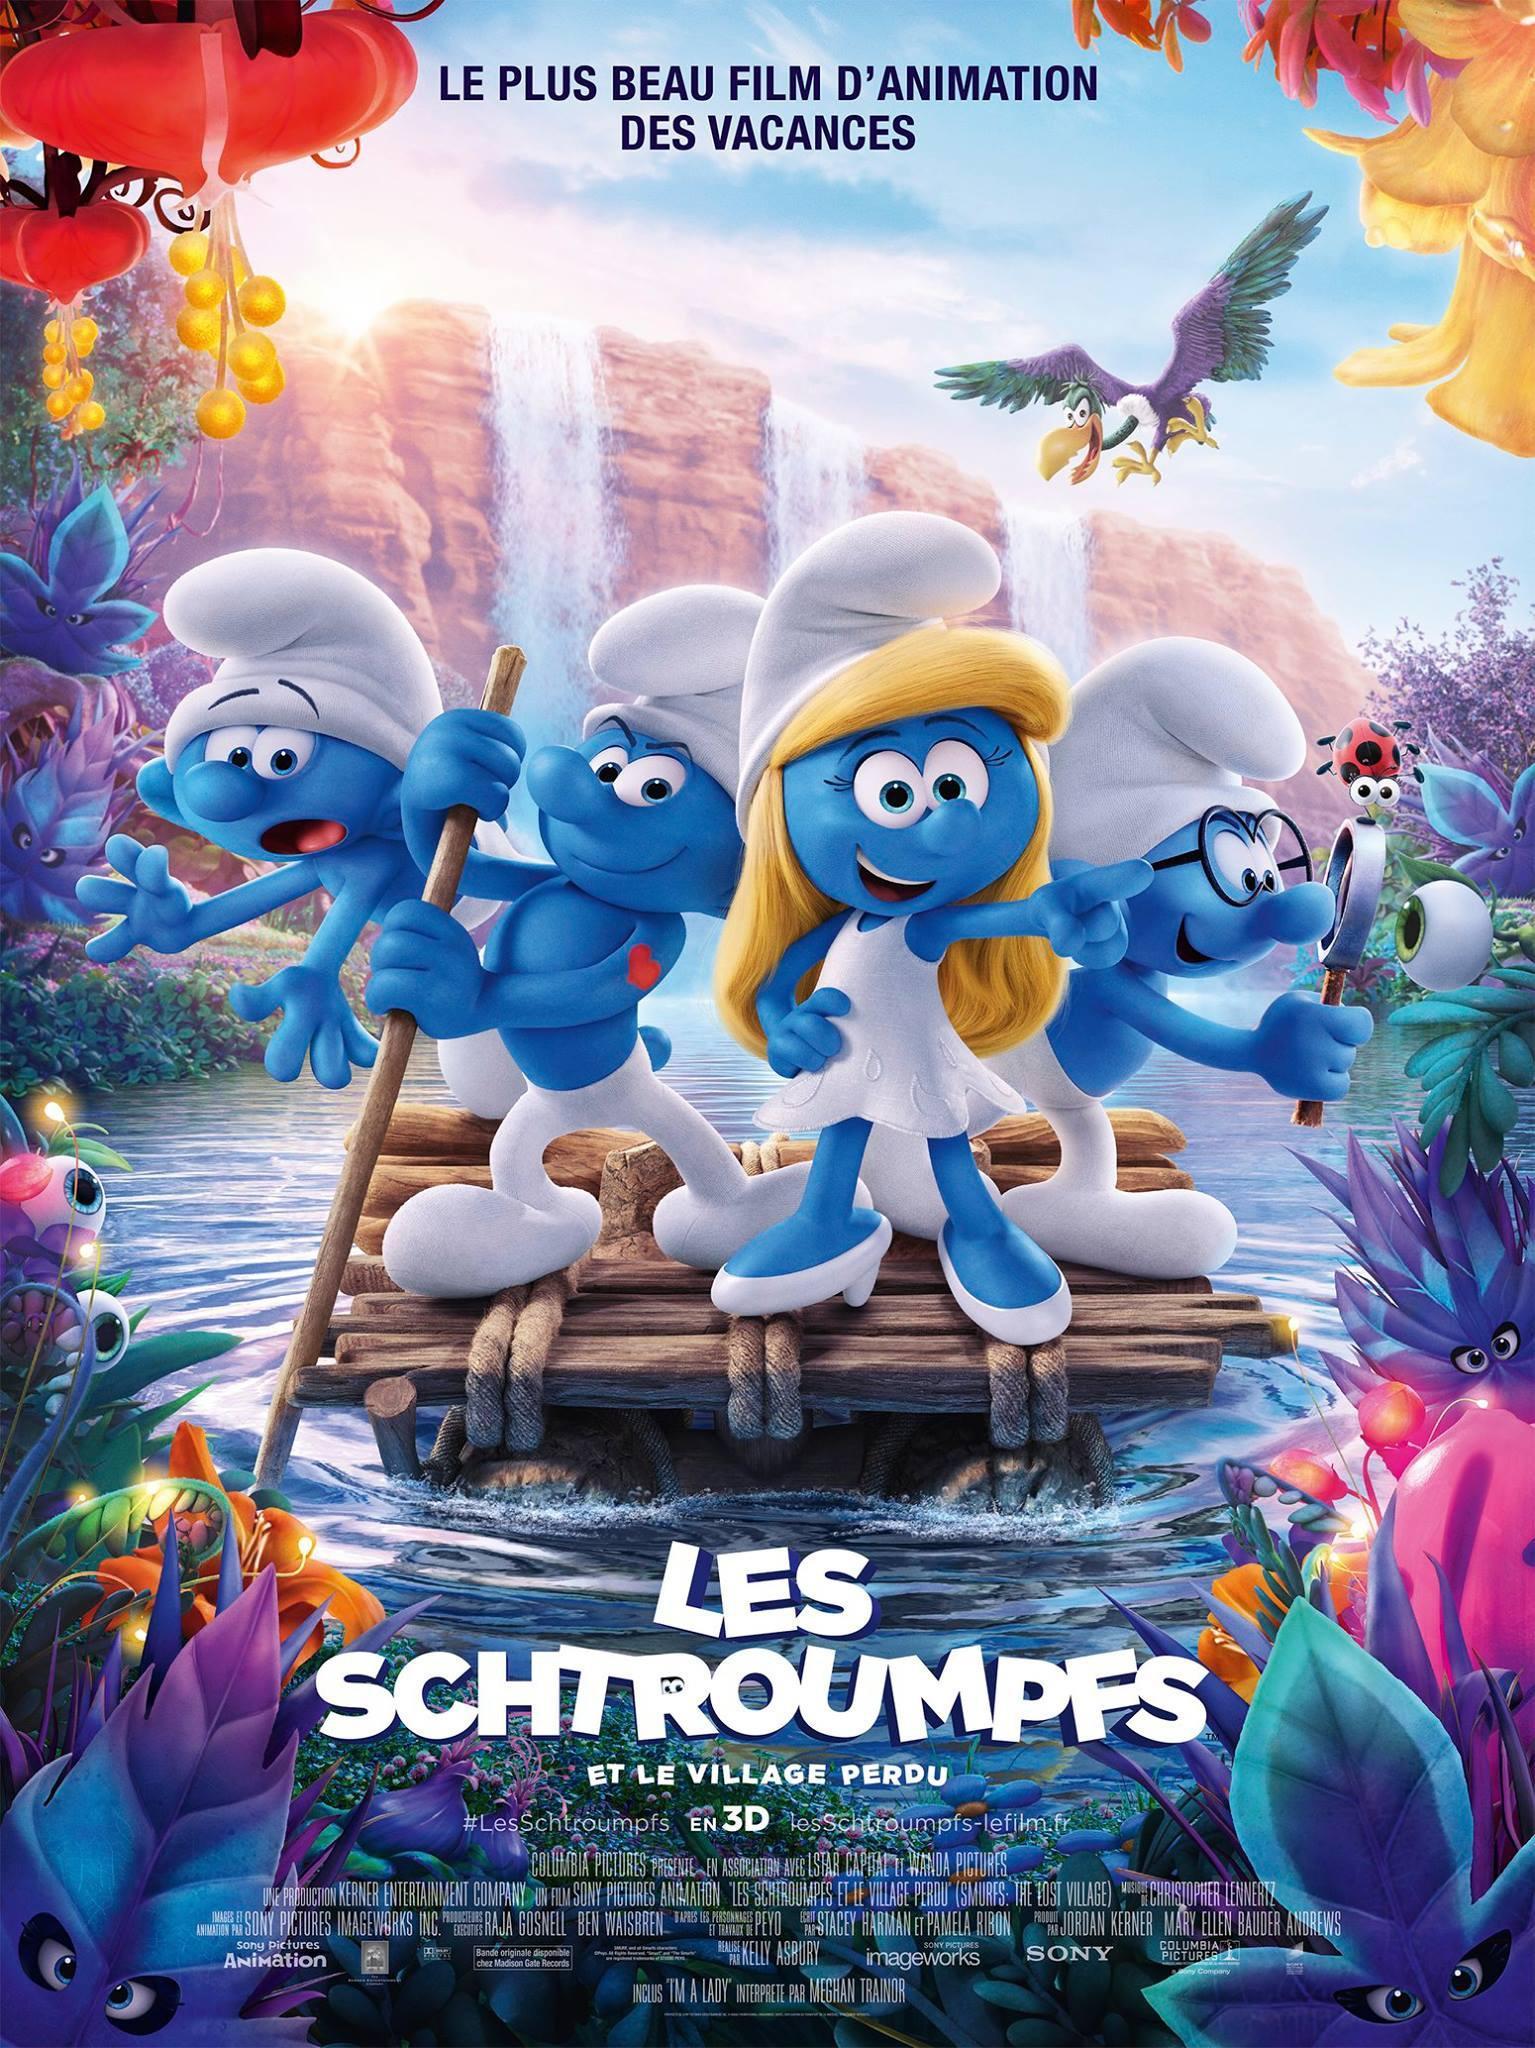 Постер фильма Смурфики: Затерянная деревня | Smurfs: The Lost Village